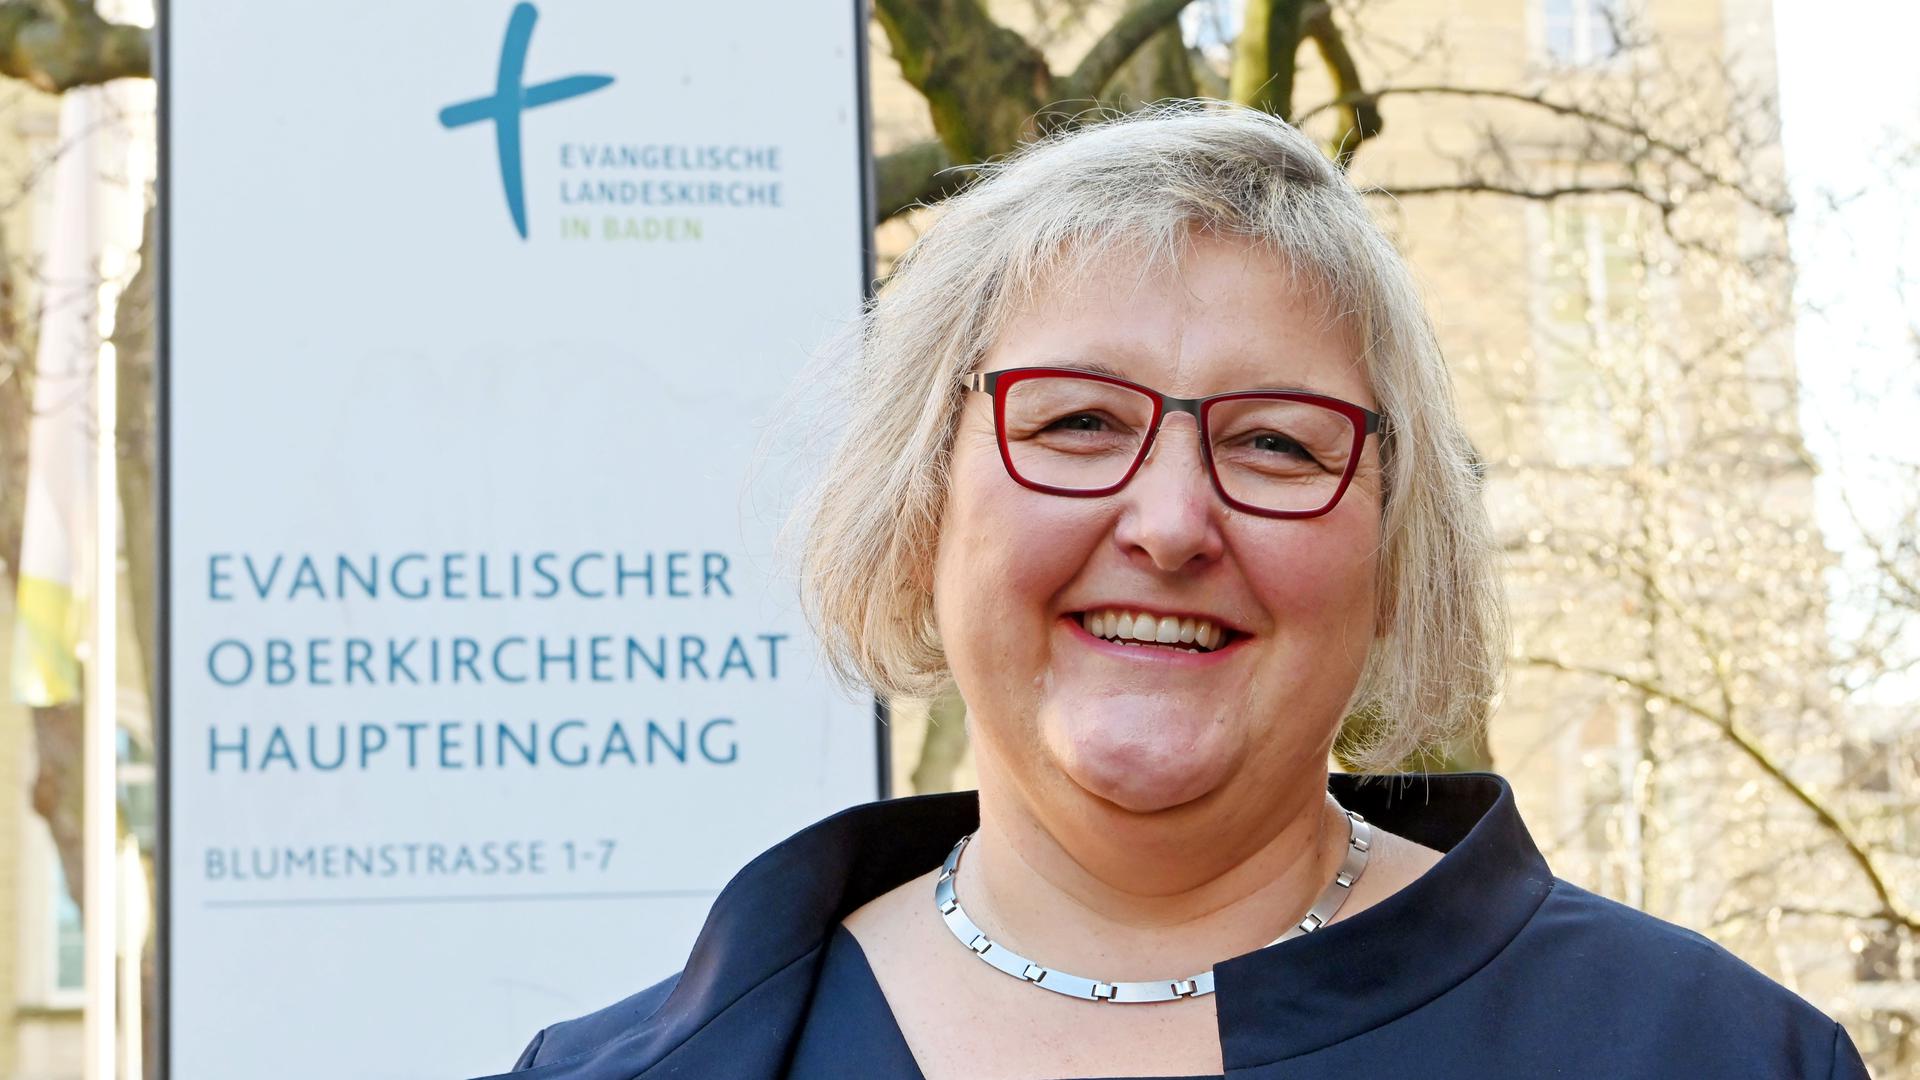 Glückliche Wahlsiegerin: Heike Springhart hat die Mehrheit der Synodalen überzeugt und wird ab April die erste badische Landesbischöfin sein. 